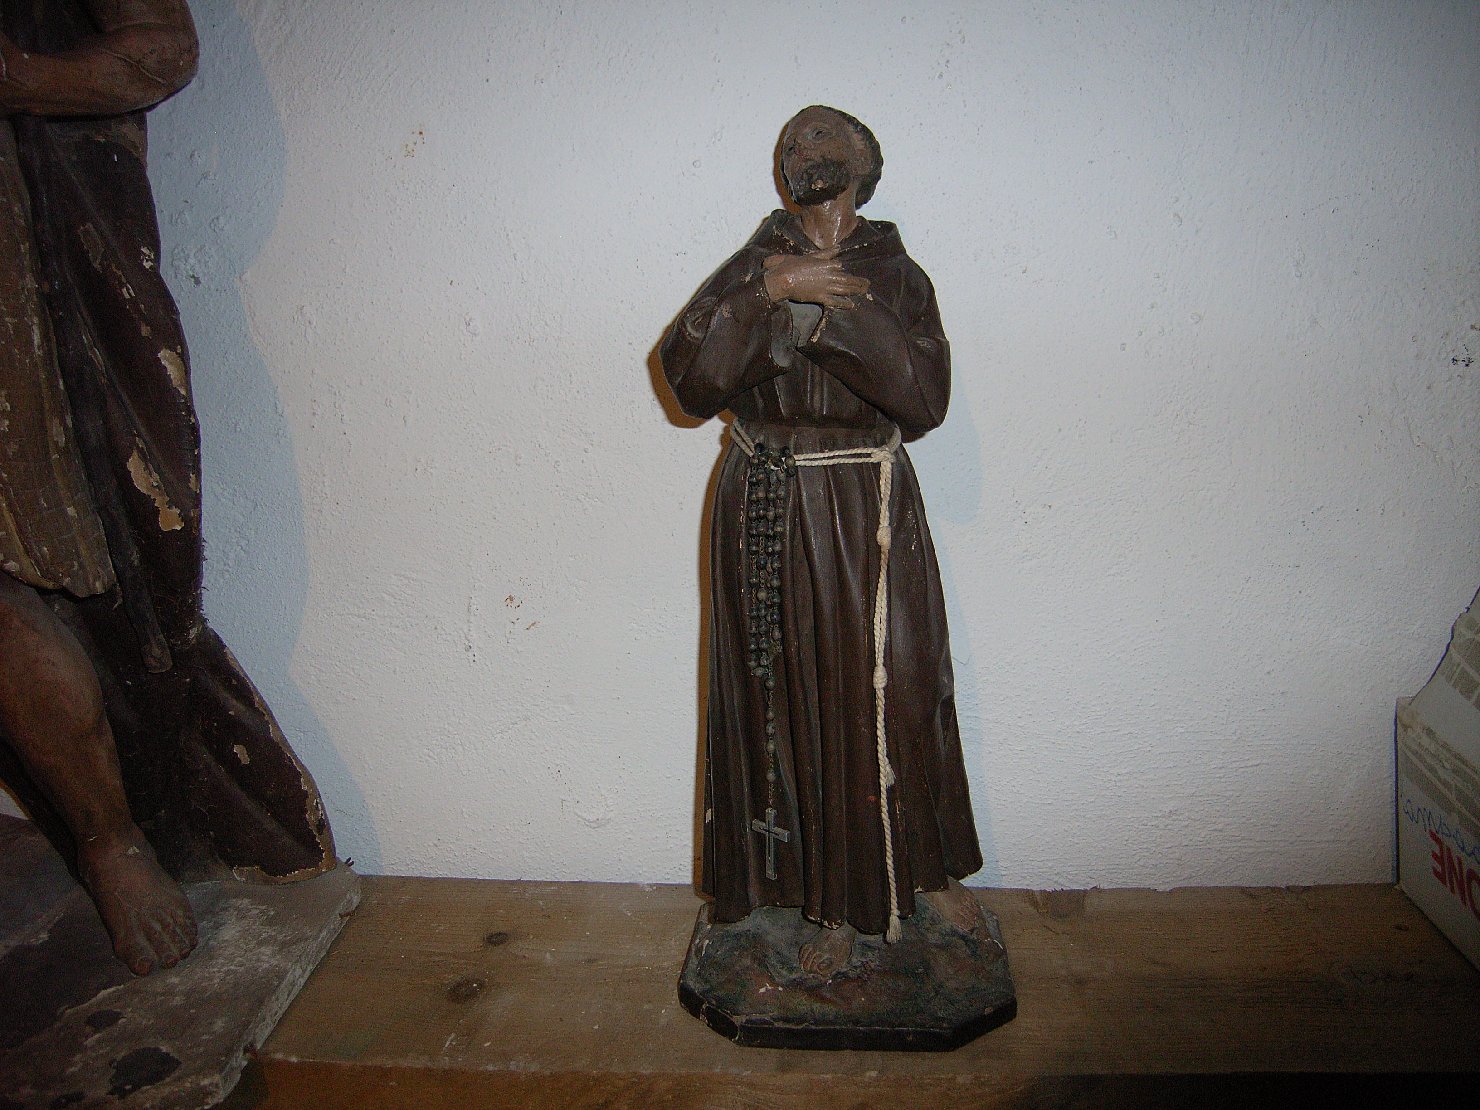 San francesco (statua)